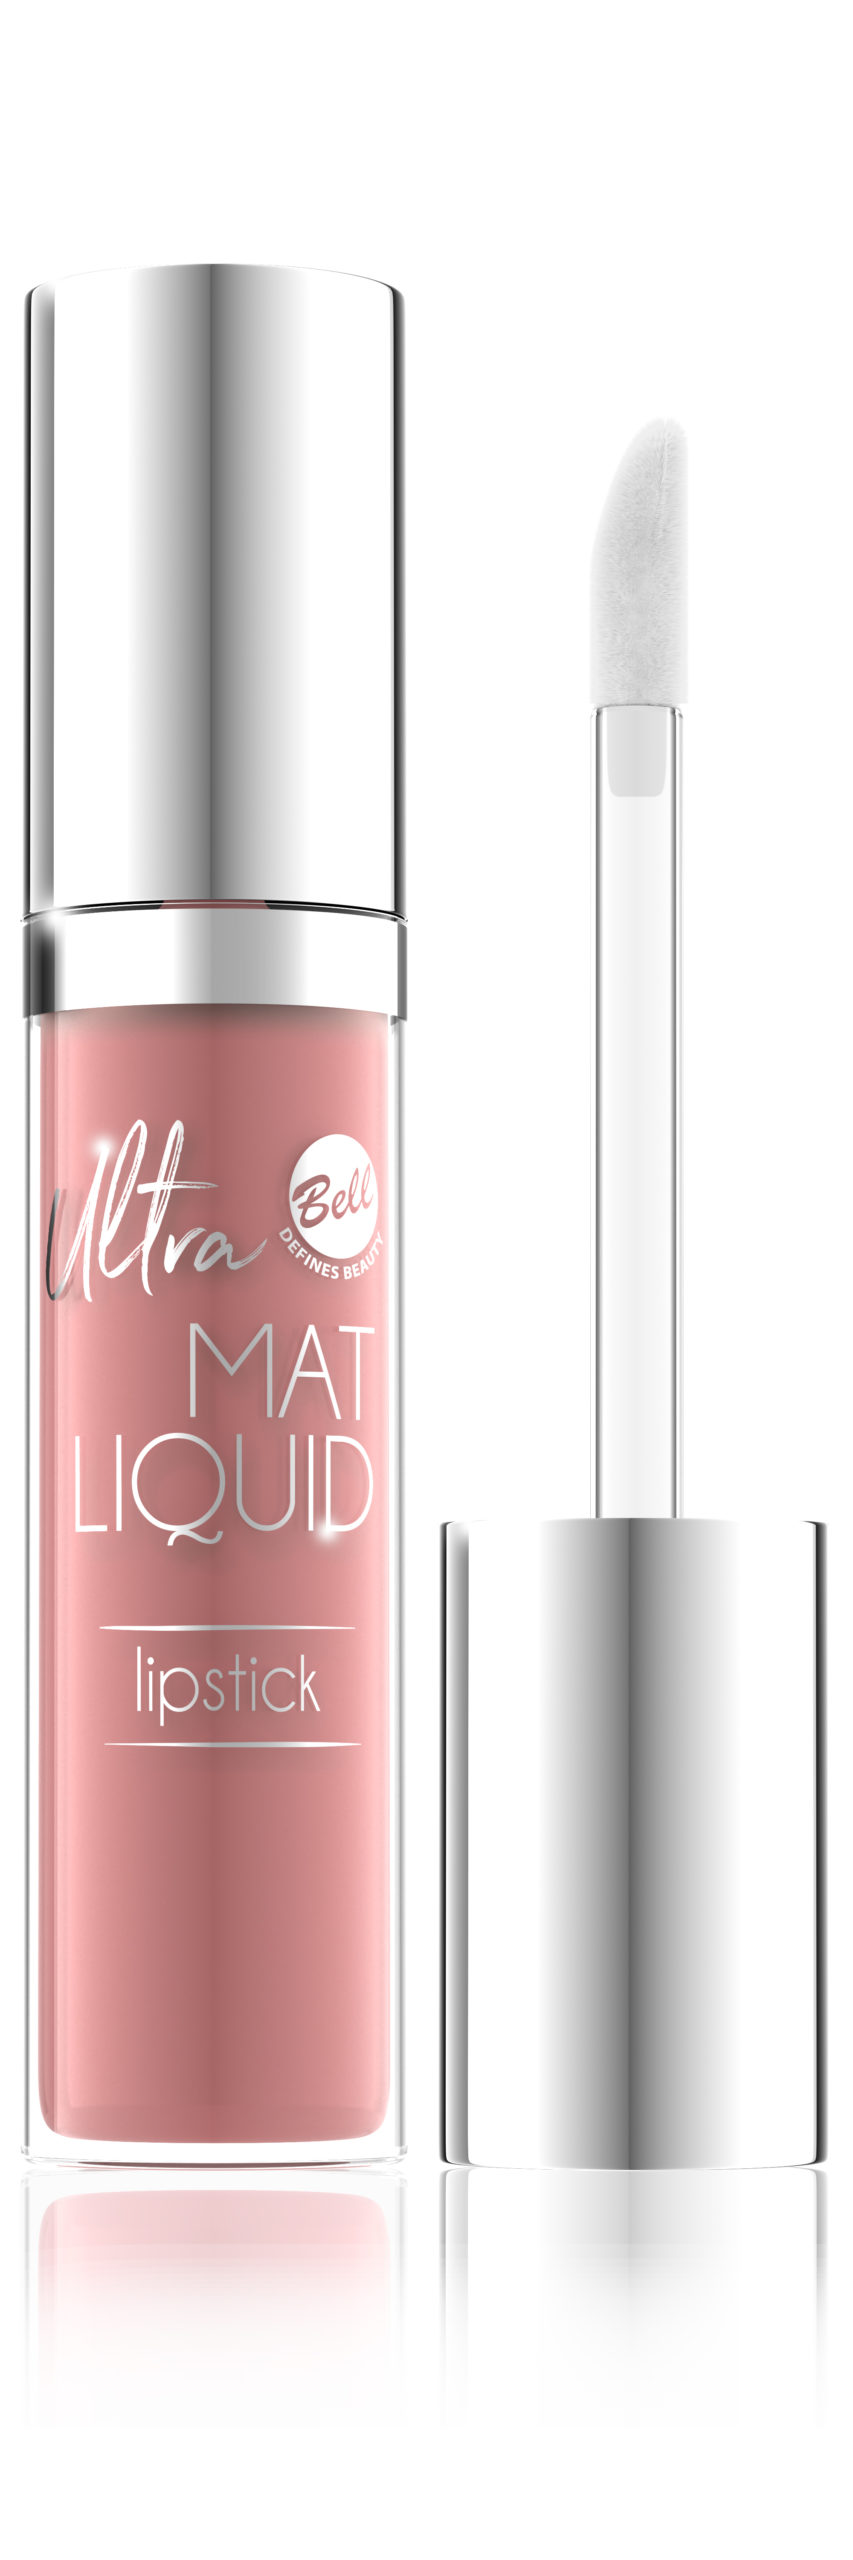 Ultra Mat Liquid Lipstick